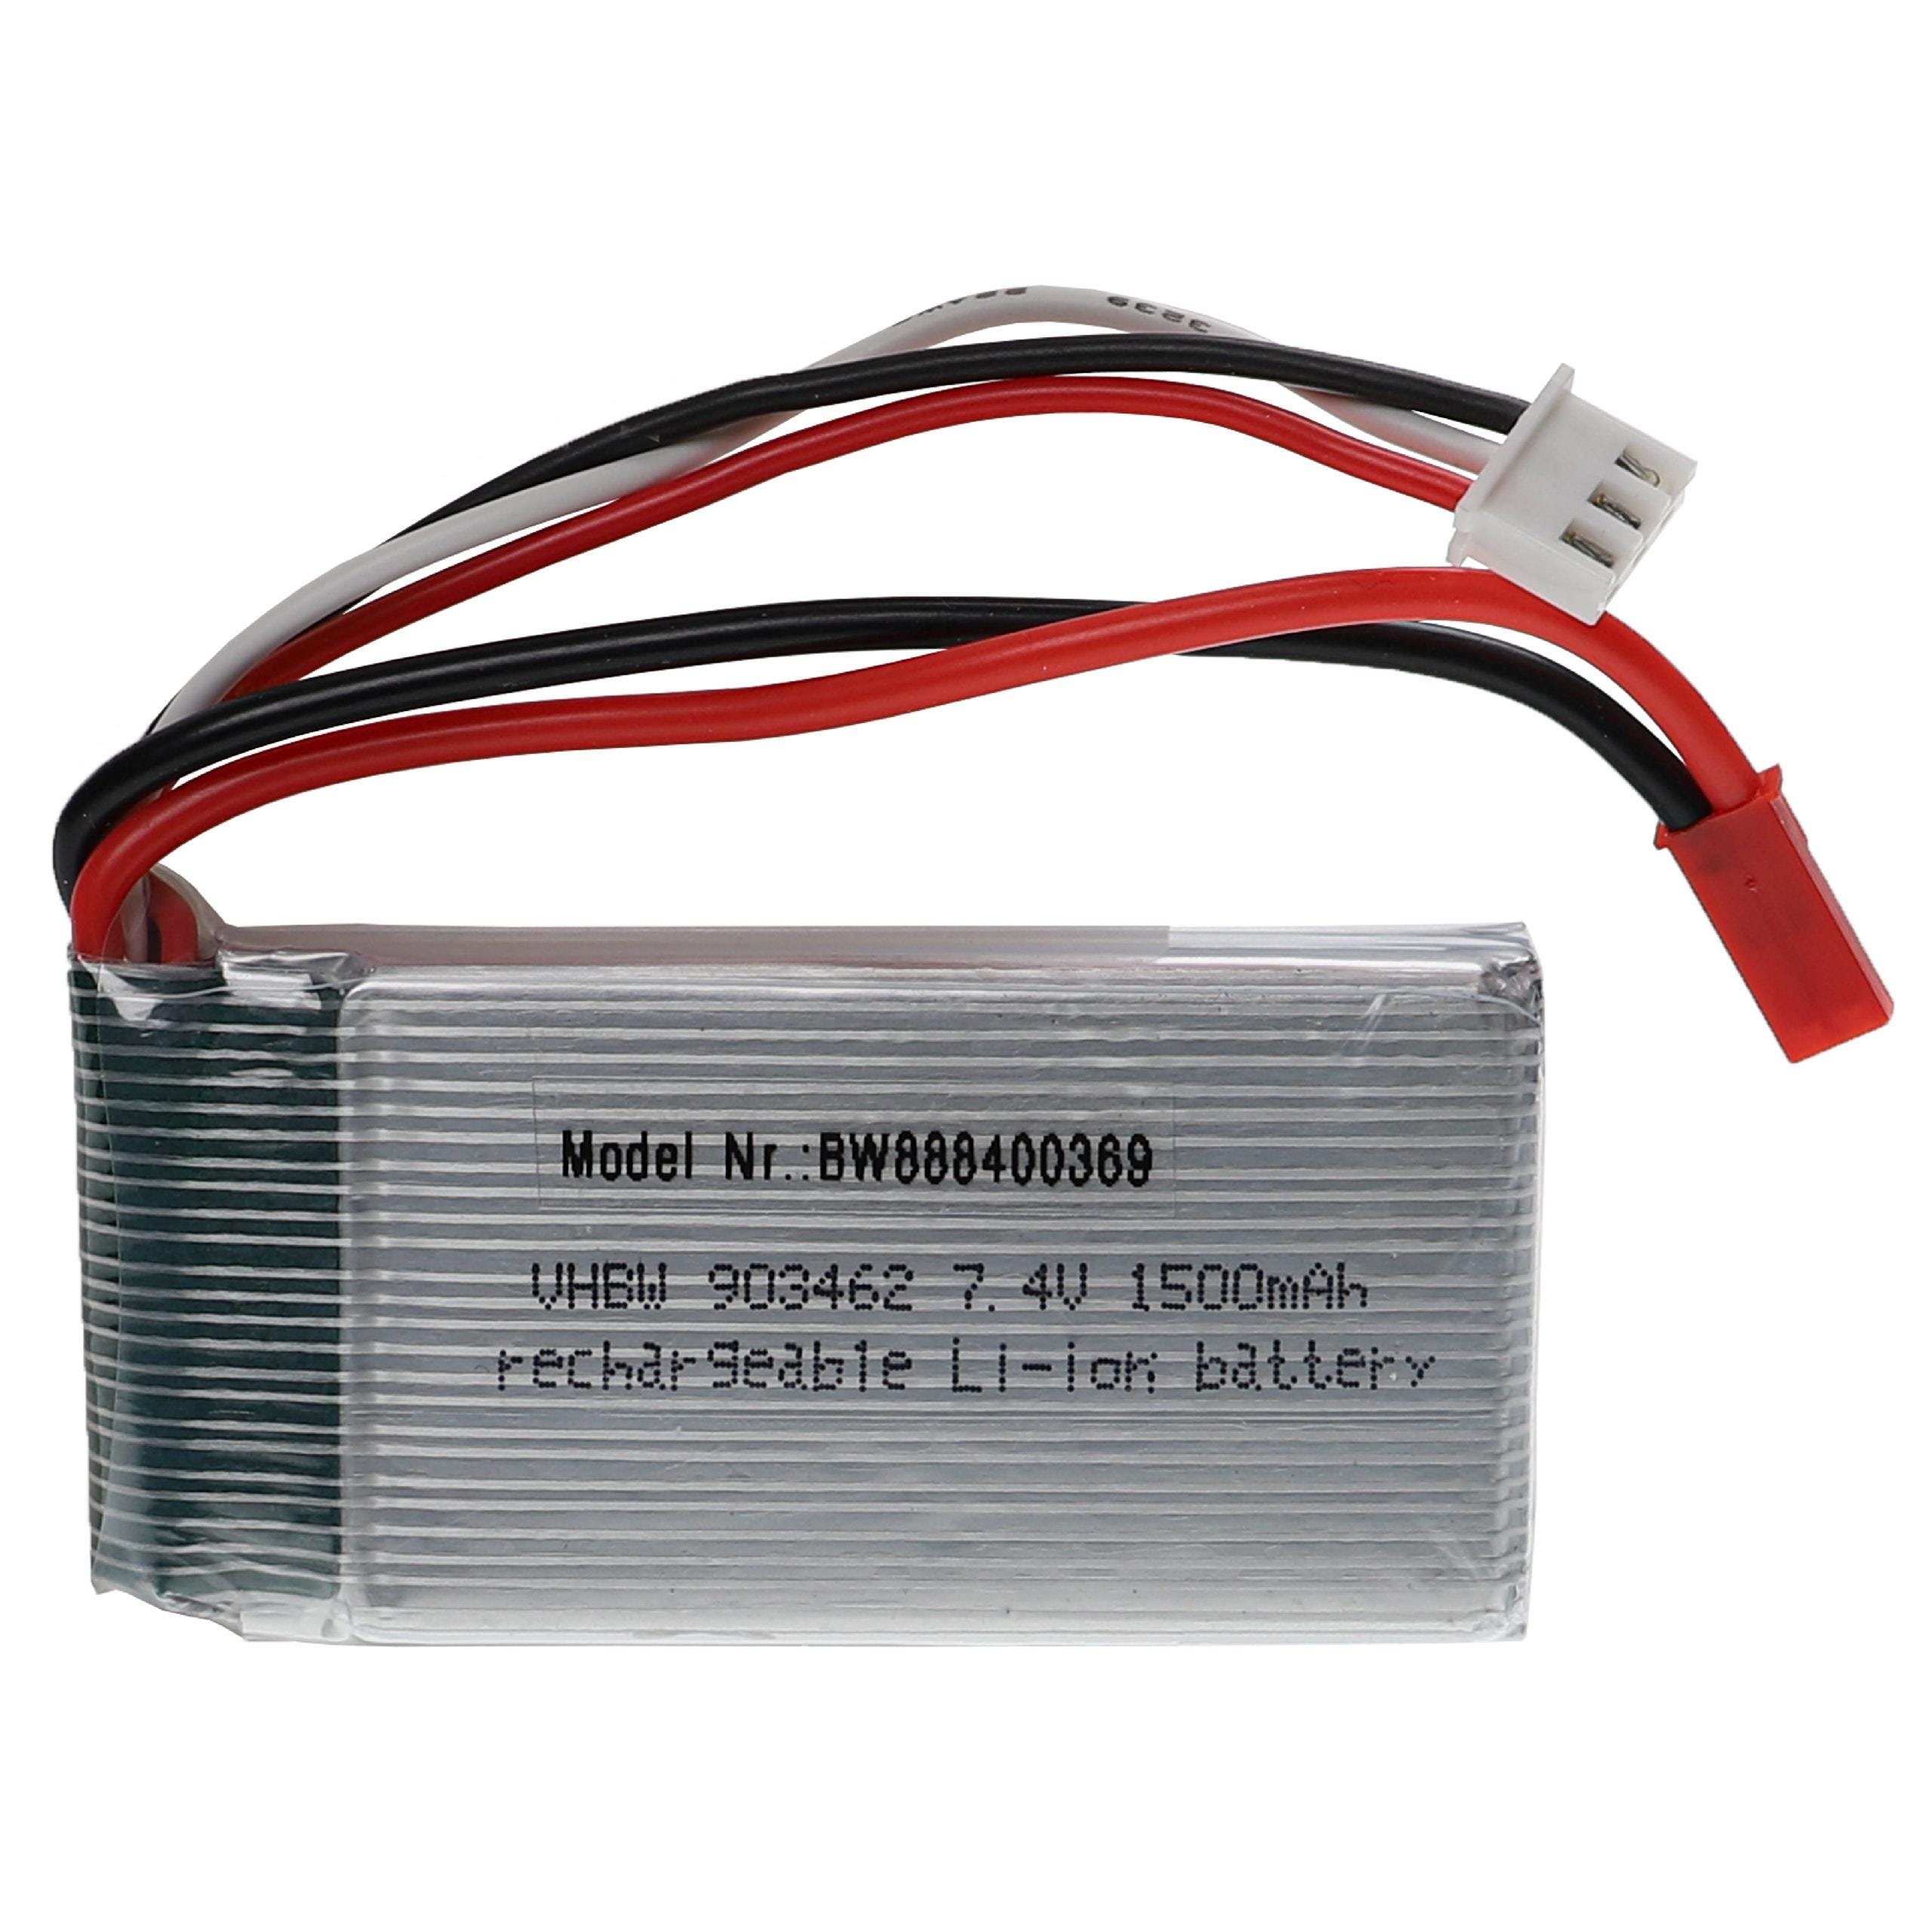 Vhbw Batterie compatible avec BEC connecteur pour modéle RC par ex